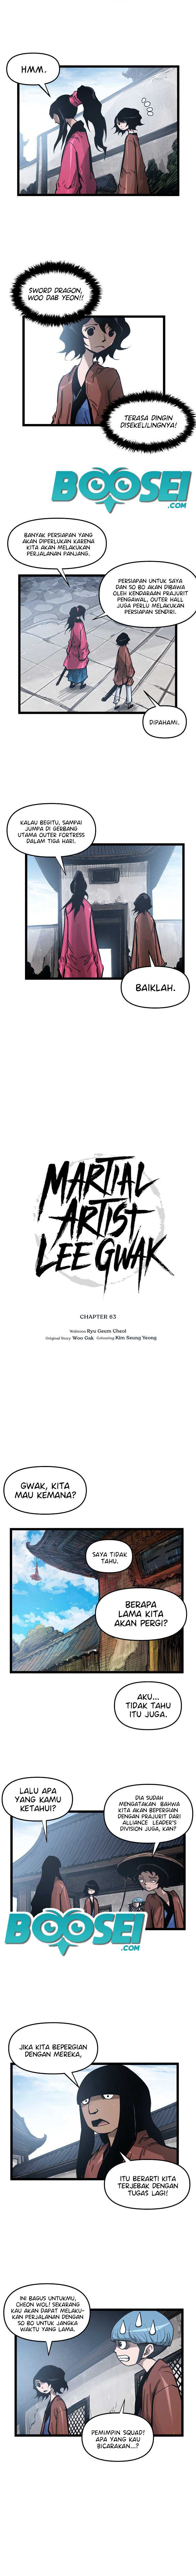 Martial Artist Lee Gwak Chapter 63 - 69